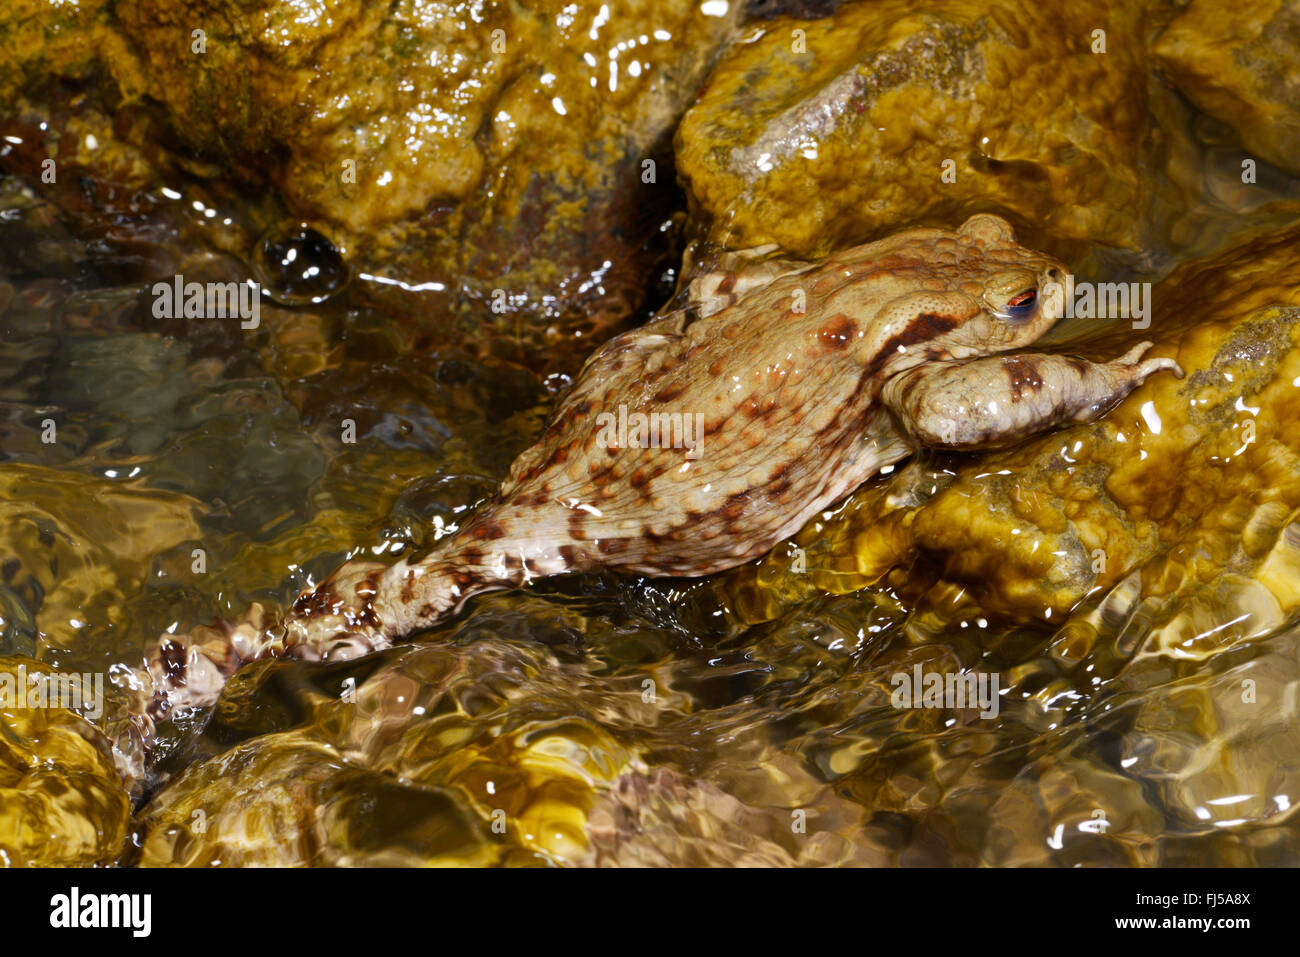 El sapo común europeo (Bufo bufo), sube contra la corriente, migración de anfibios, Rumania, Karpaten Foto de stock